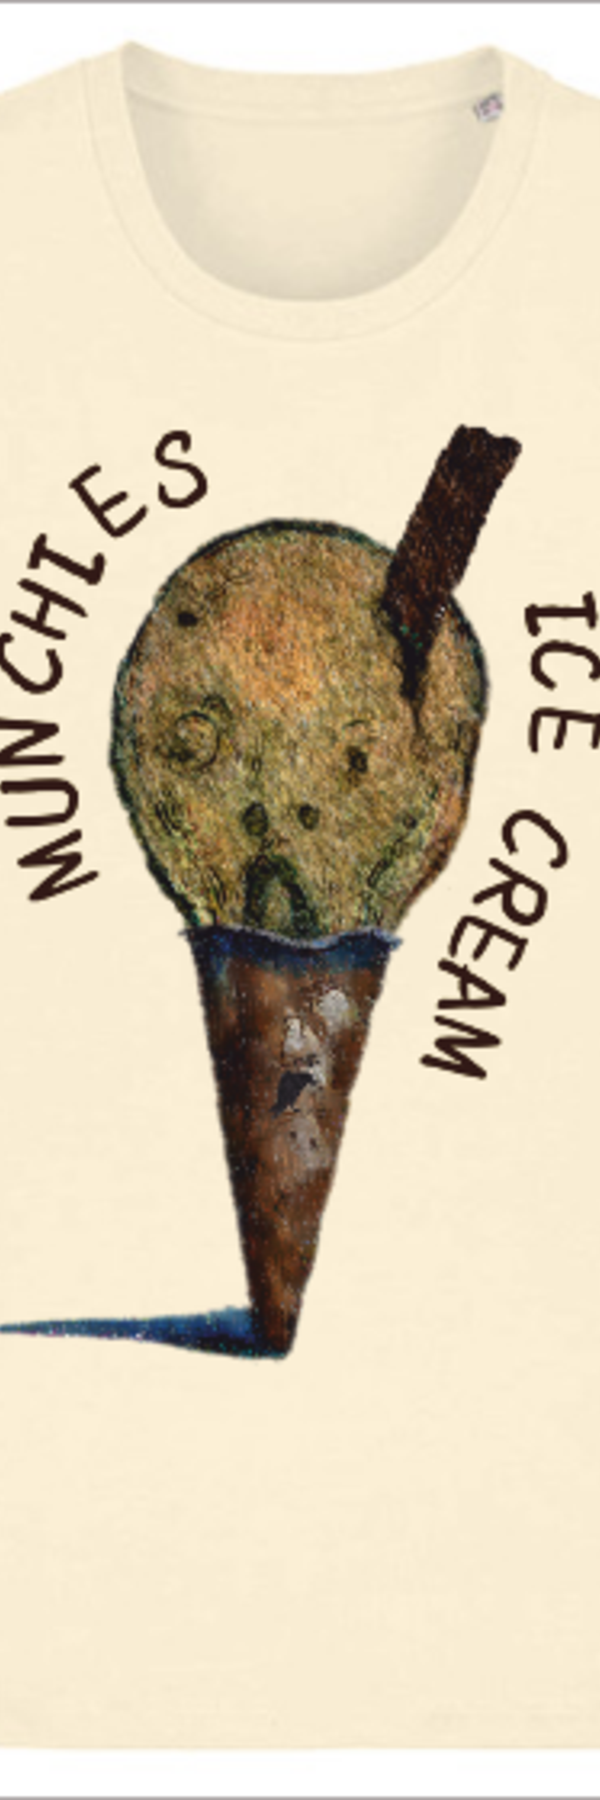 crowear-tshirt-eco-friendly-funny-munchies-scream-organic.png Thumbnail